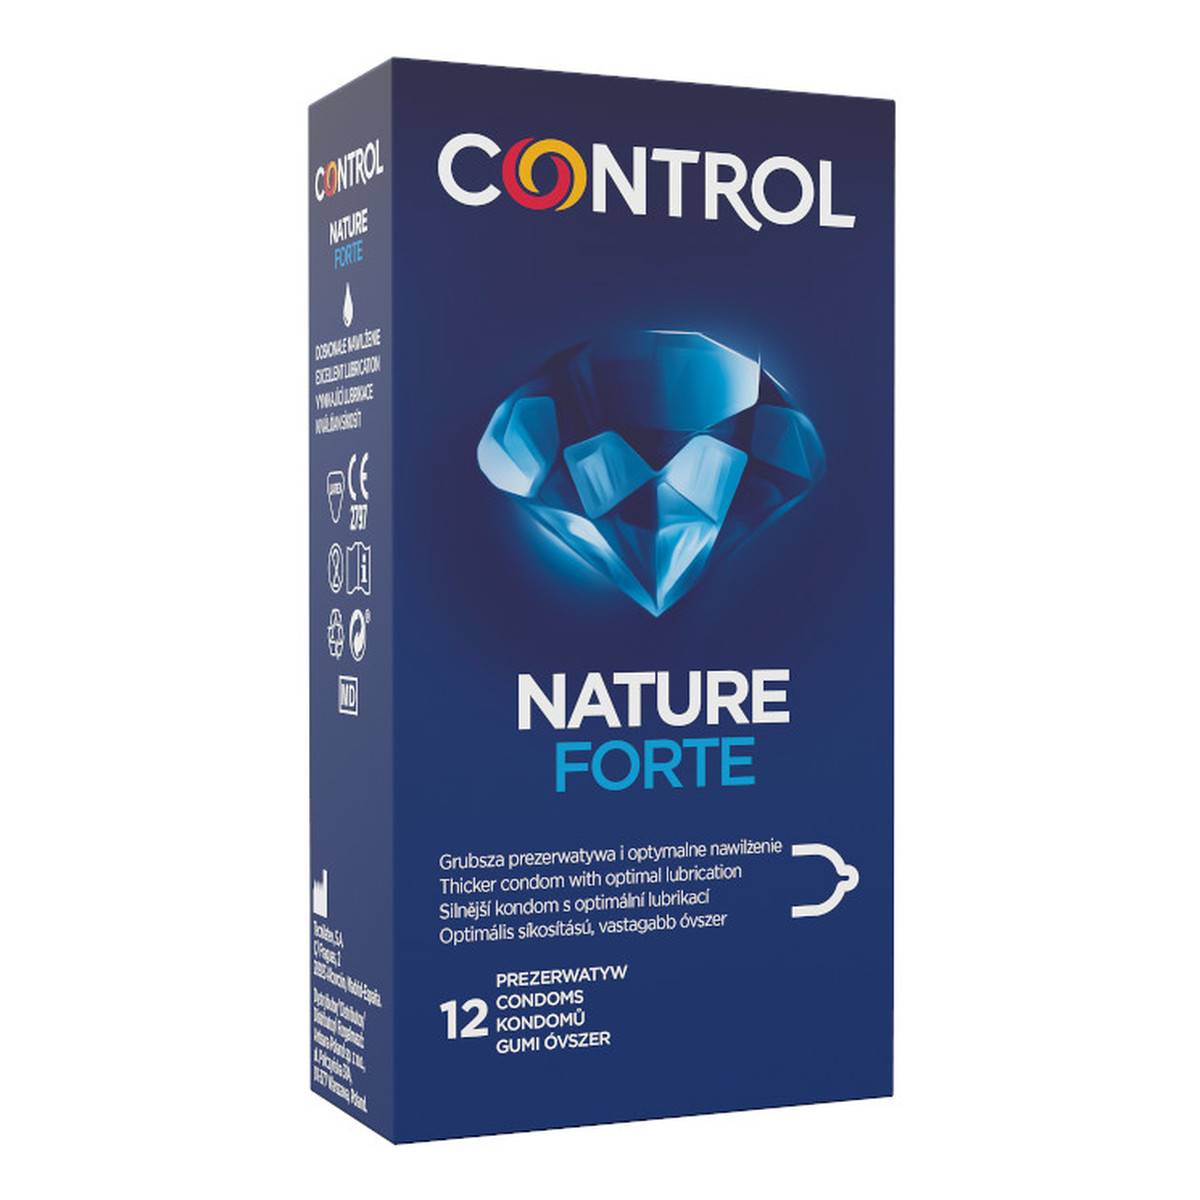 Control Nature forte pogrubione ergonomicznie prezerwatywy z naturalnego lateksu 12szt.